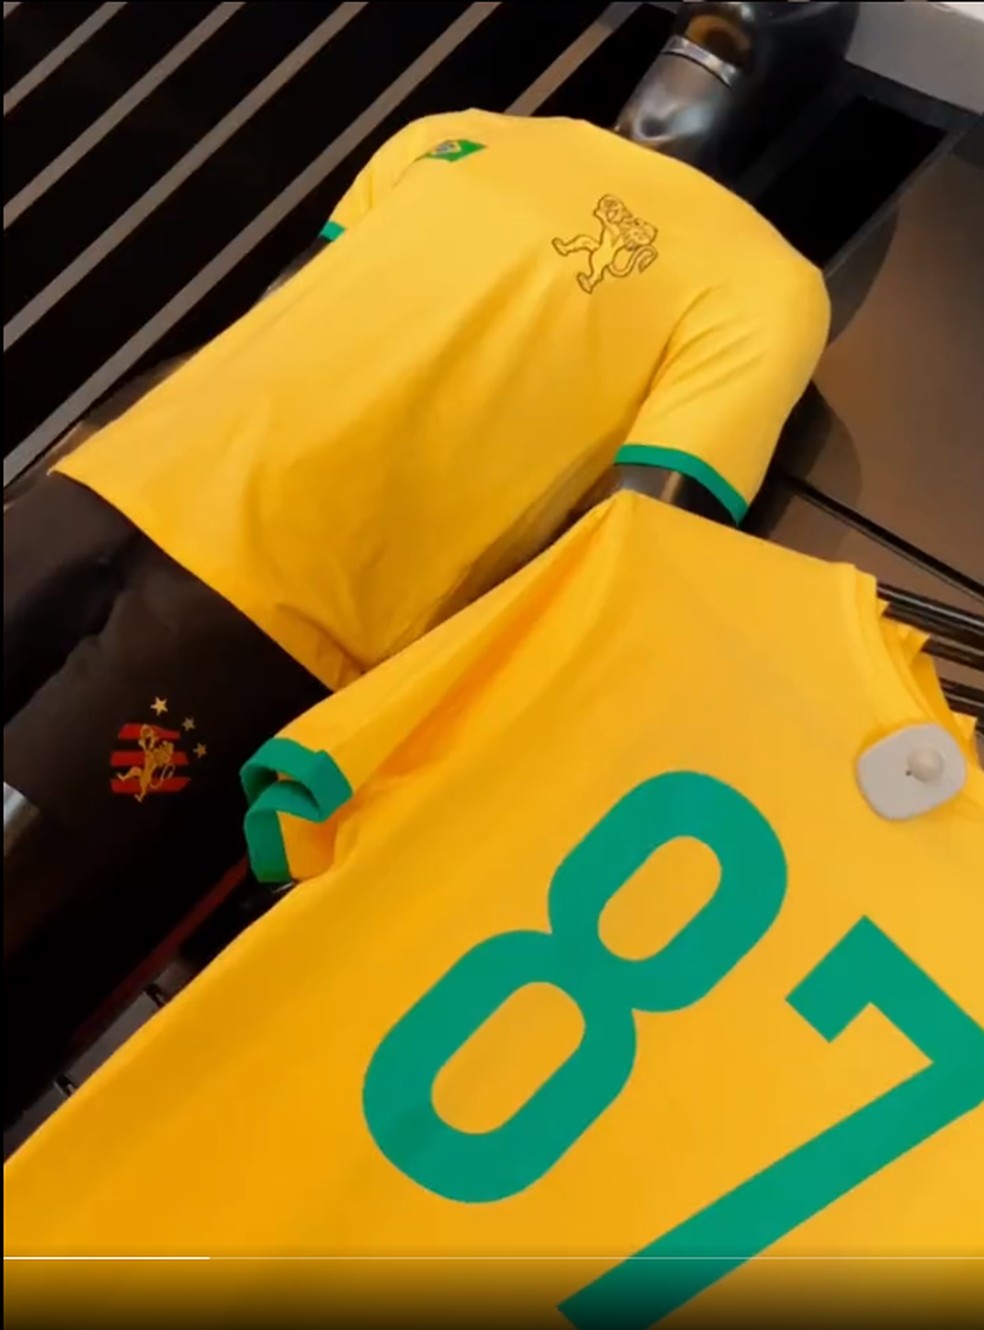 Camisa Brasil Polo Amarela 2022 – KS Sports – Camisas de Times e Seleções